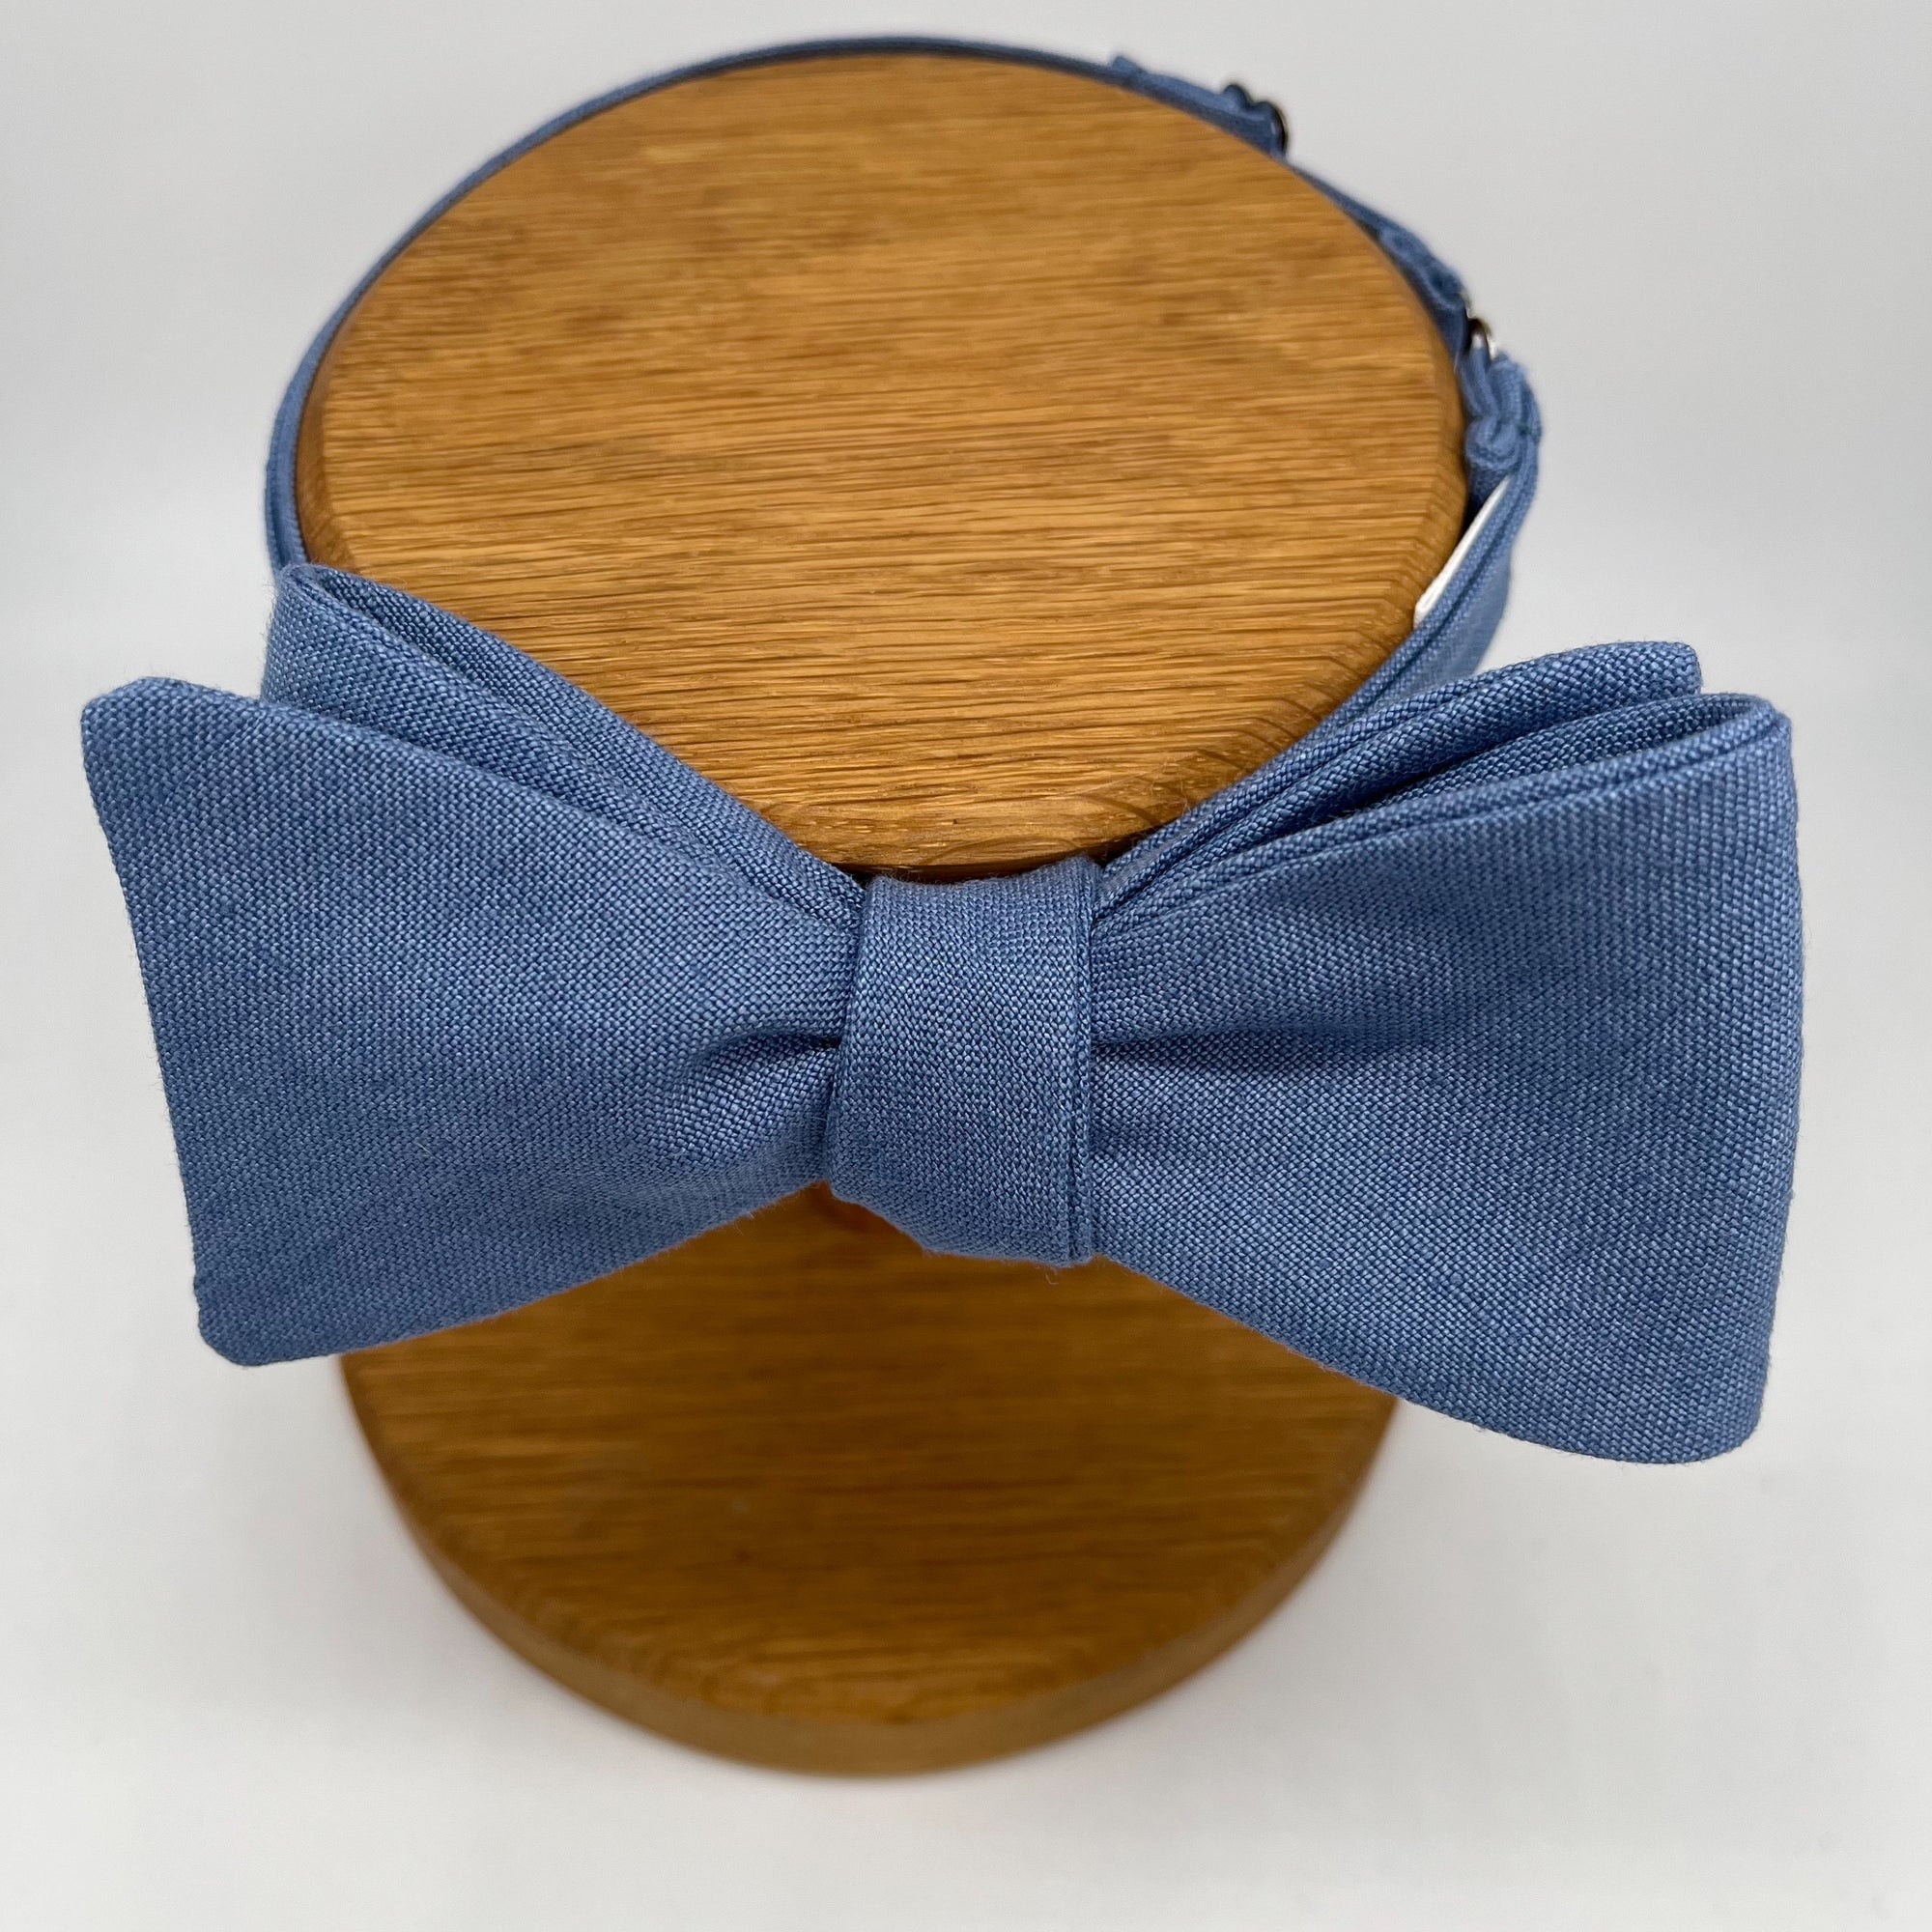 Self-Tie Bow Tie in Slate Blue Irish Linen